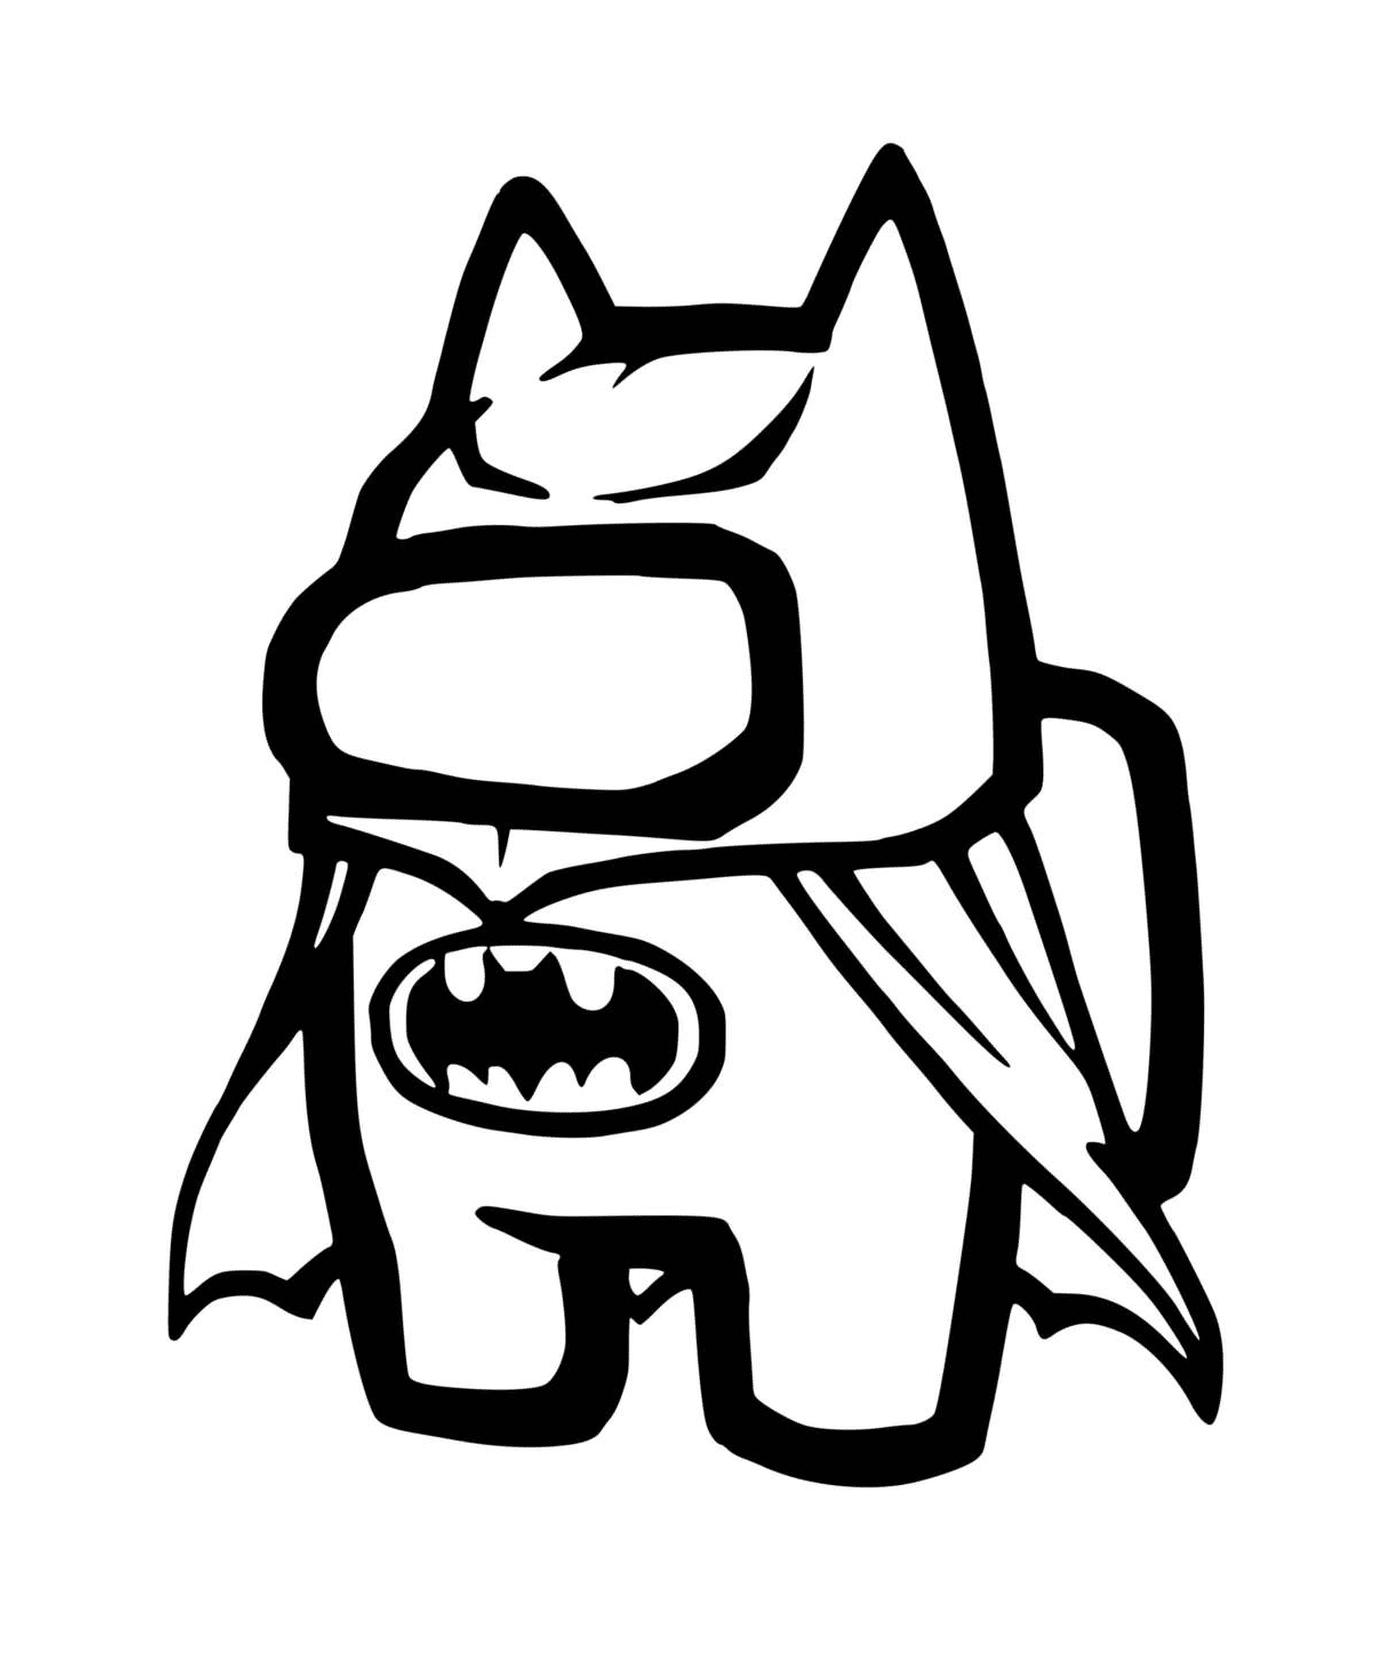  характер Бэтмена 